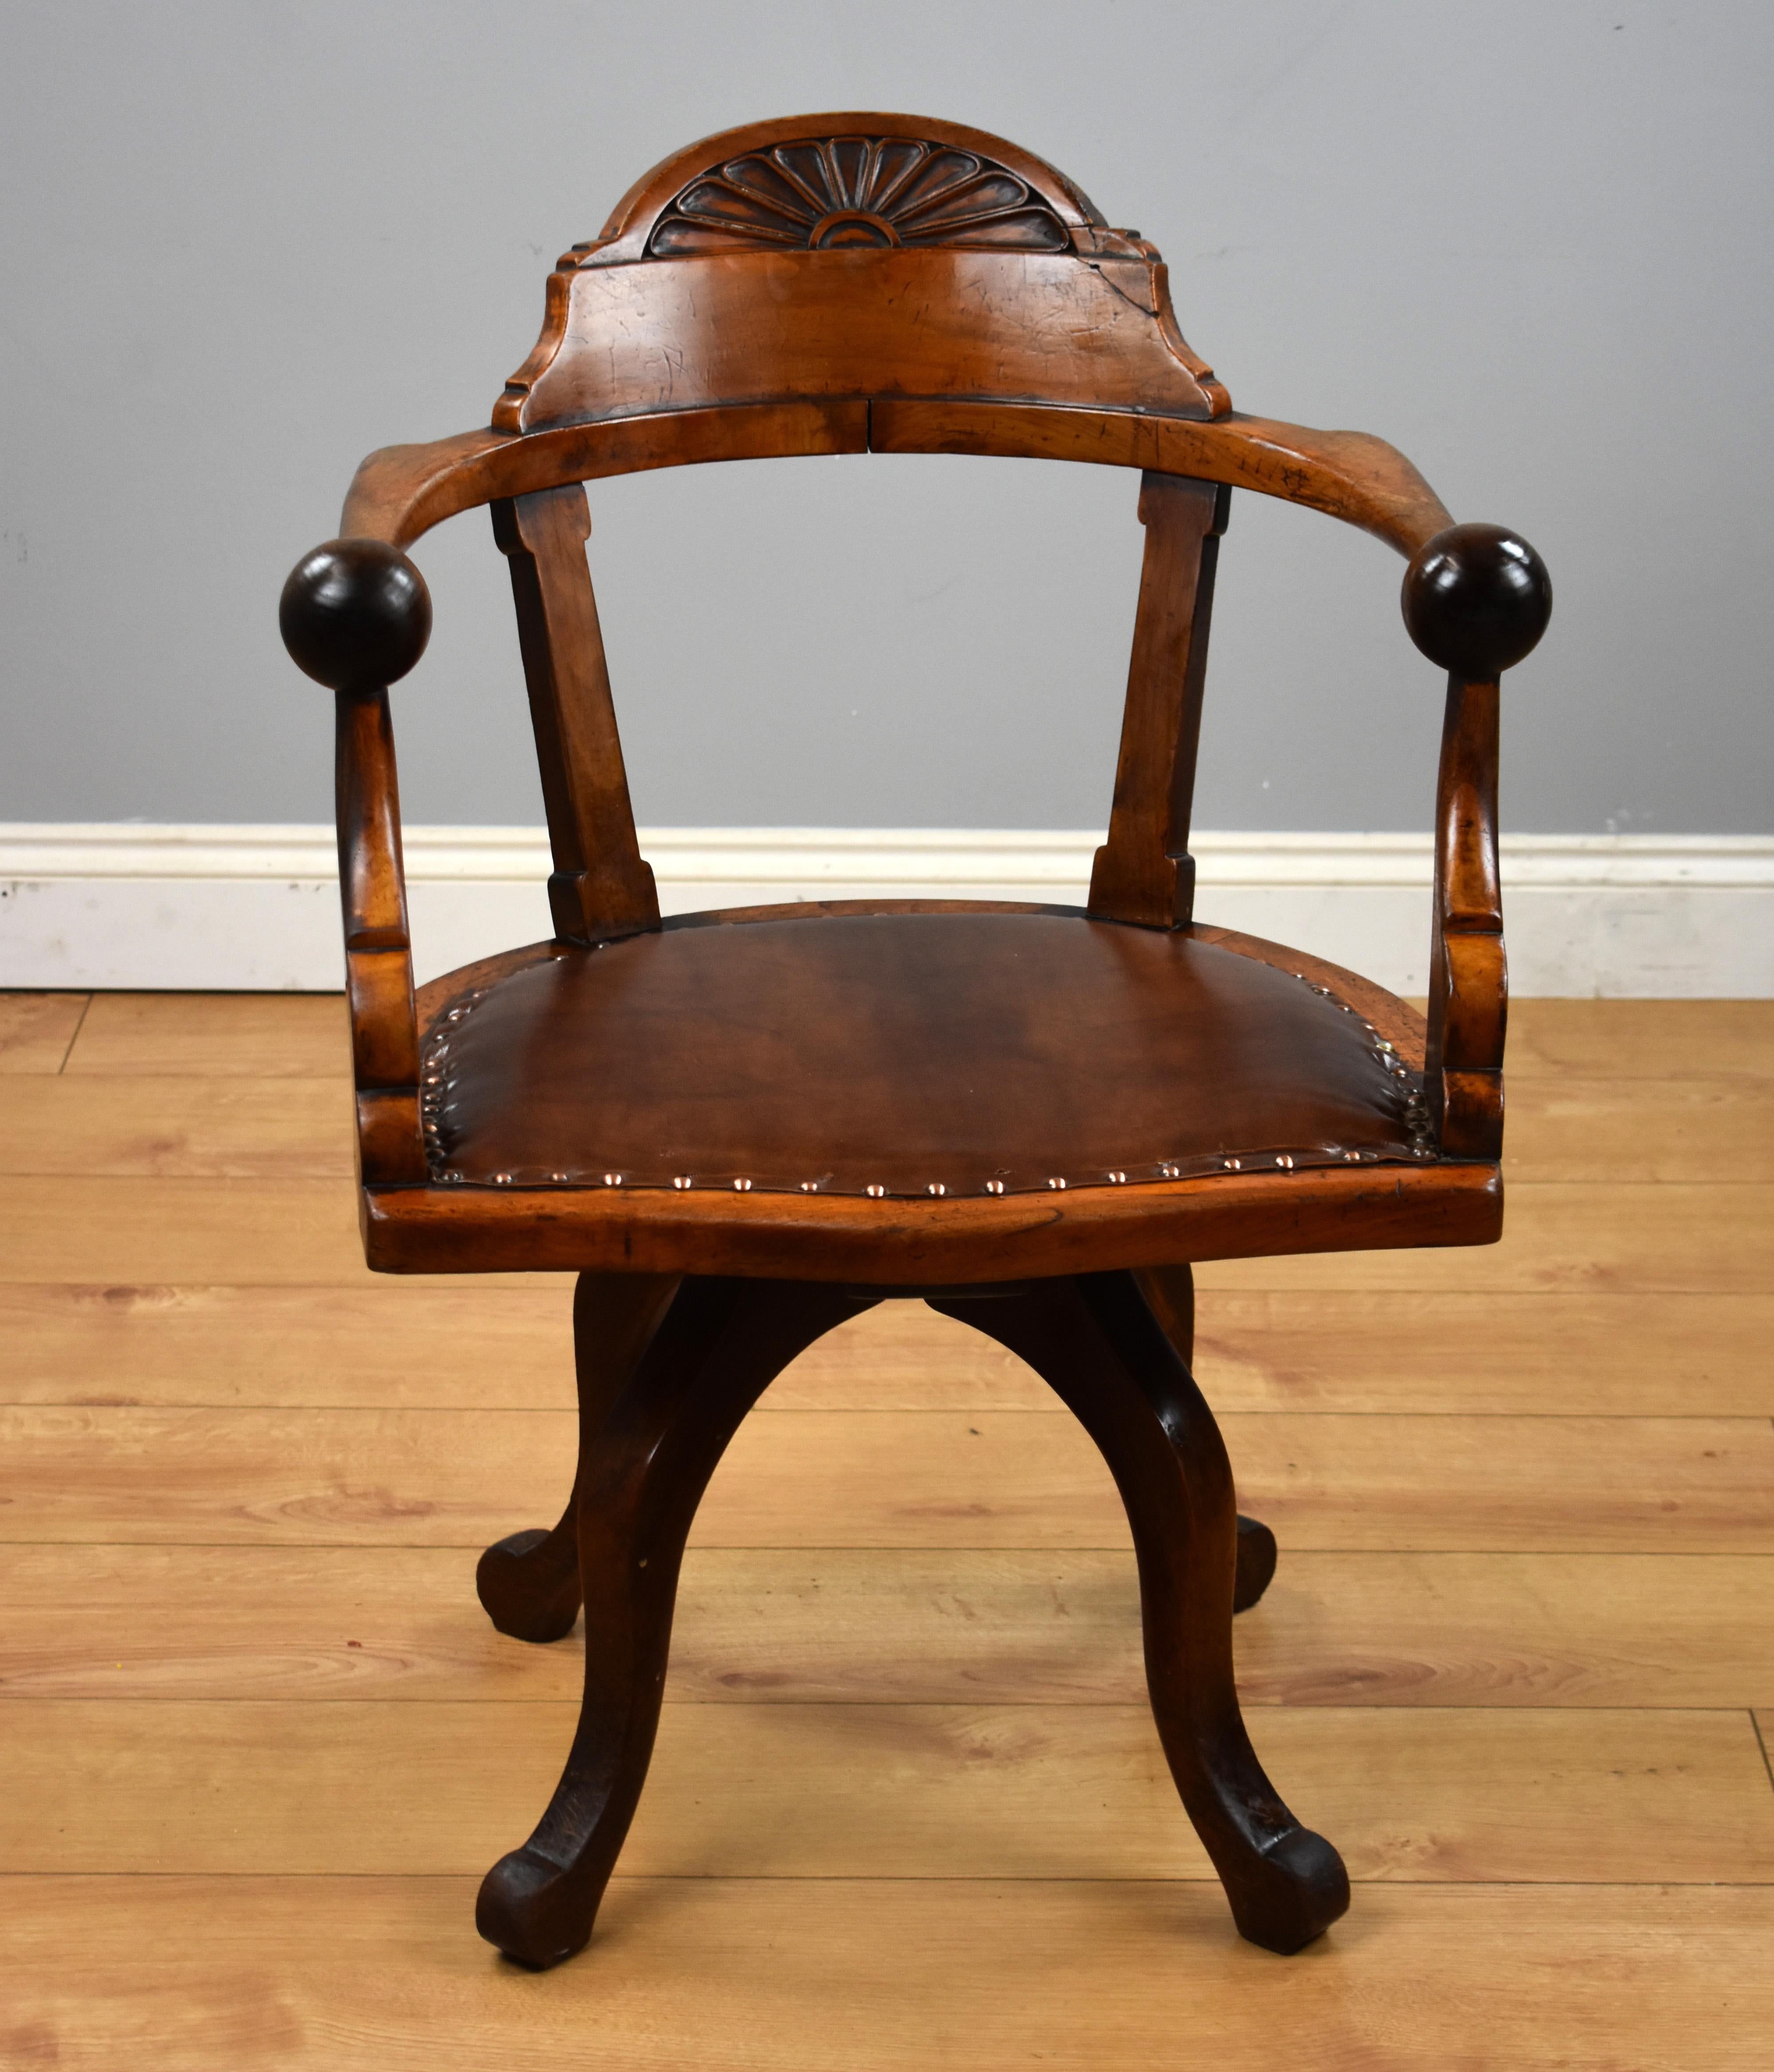 Zum Verkauf steht ein viktorianischer Schreibtischstuhl aus Mahagoni im Arts & Crafts-Stil, drehbar und mit vier nach unten geschwungenen Beinen, die auf Schneckenfüßen enden.

Maße: Breite 24